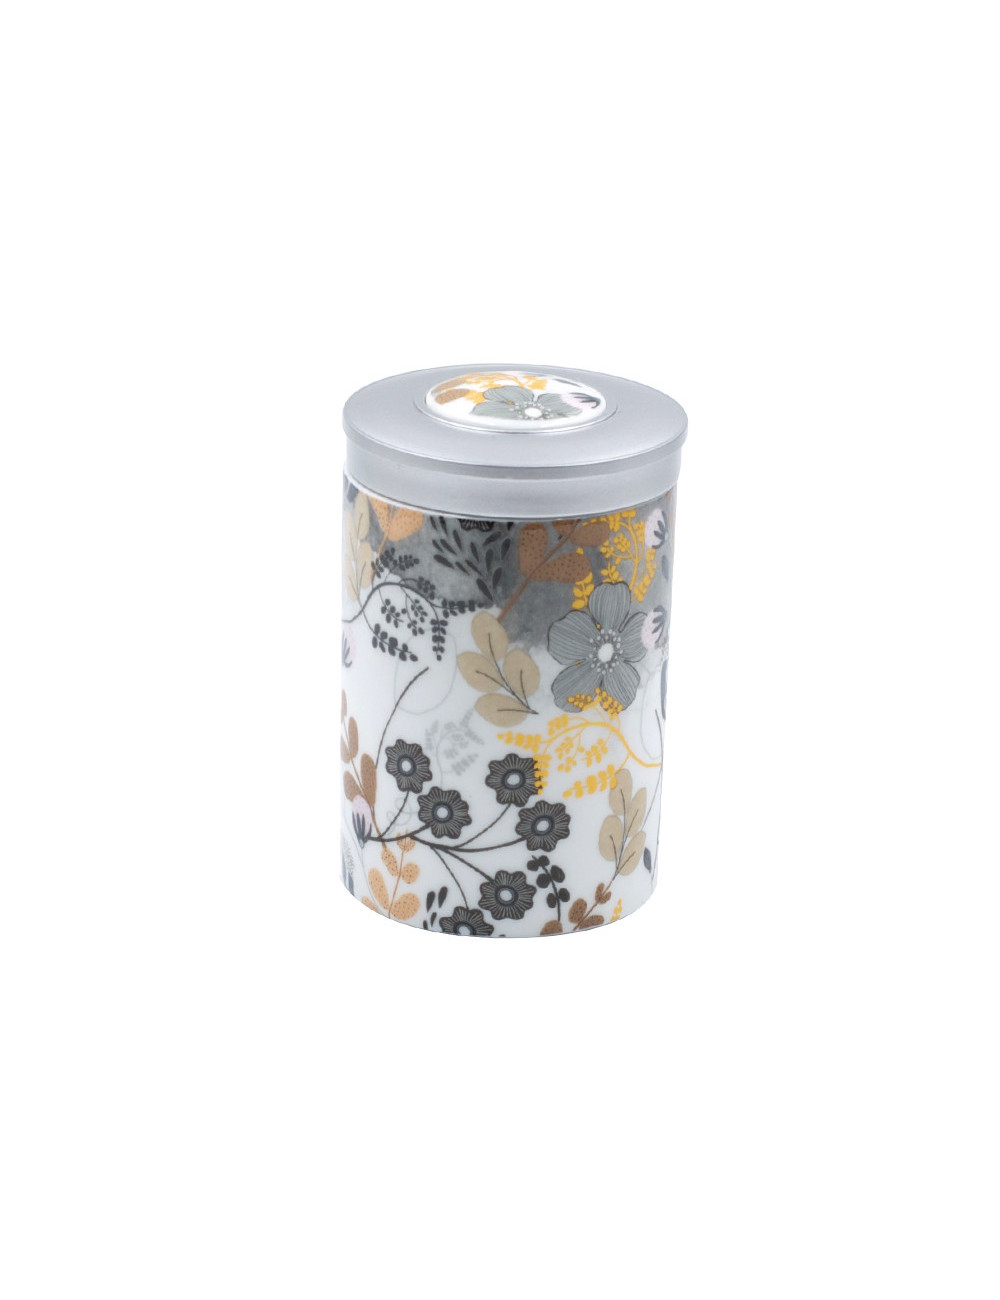 Contenitore per il tè in fine porcellana con decoro floreale - La Pianta del Tè shop online